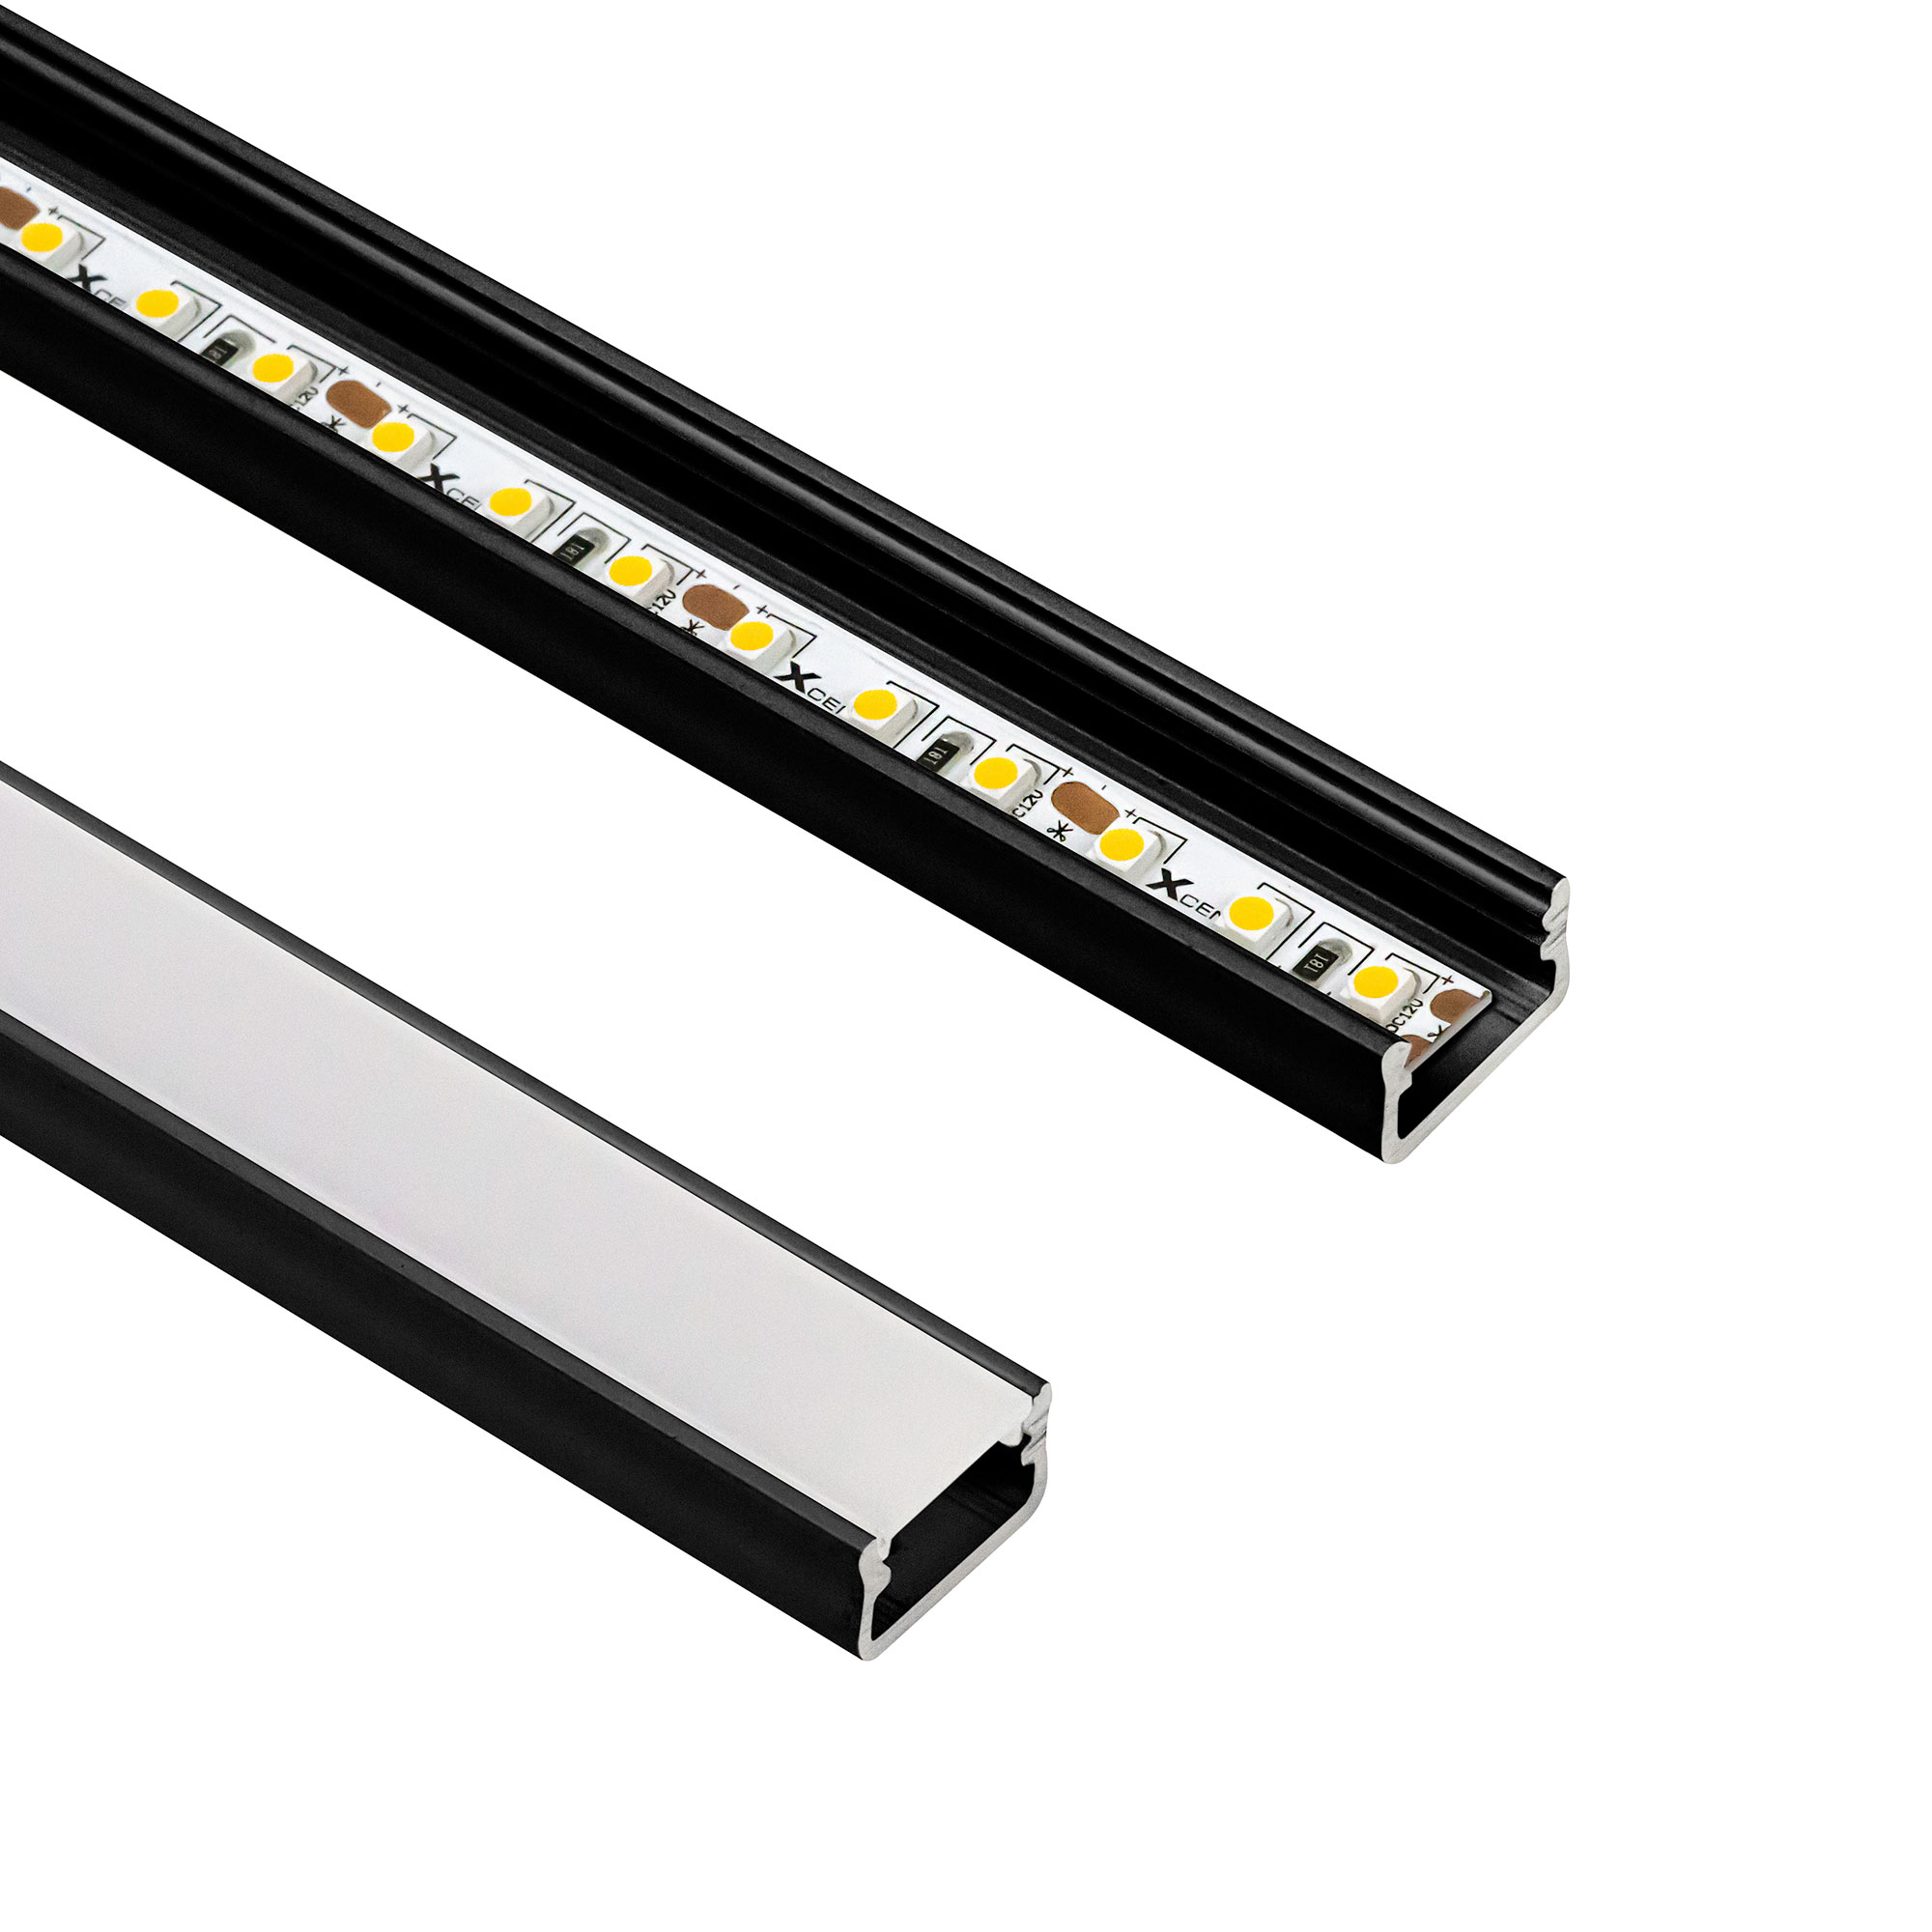 Dimmbare LED-Lichtleisten - 24V - WallRibbon